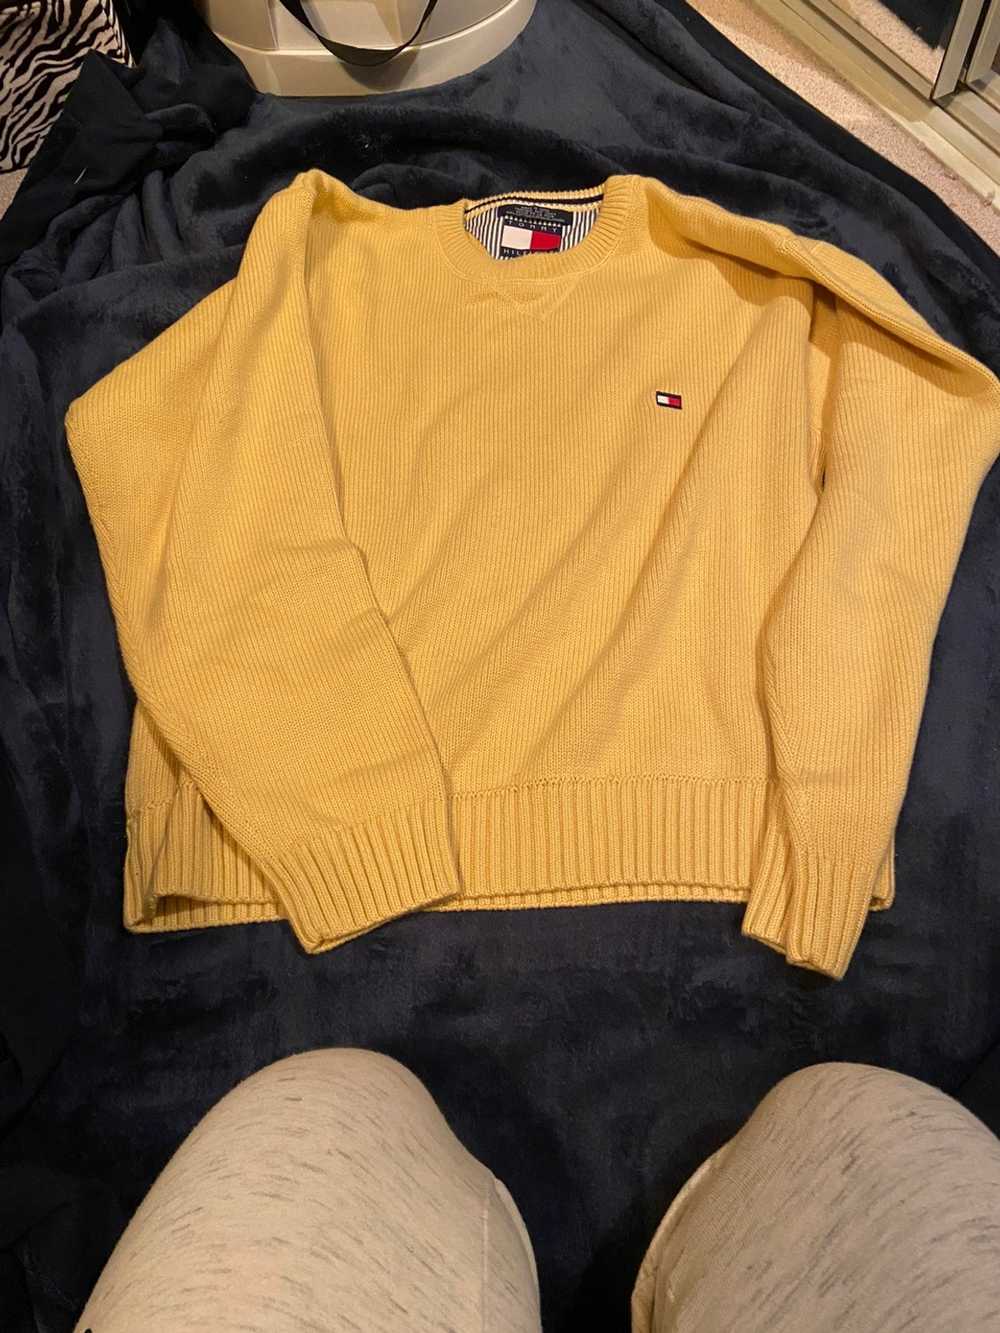 Tommy Hilfiger Vintage tommy hilfiger sweater - image 1